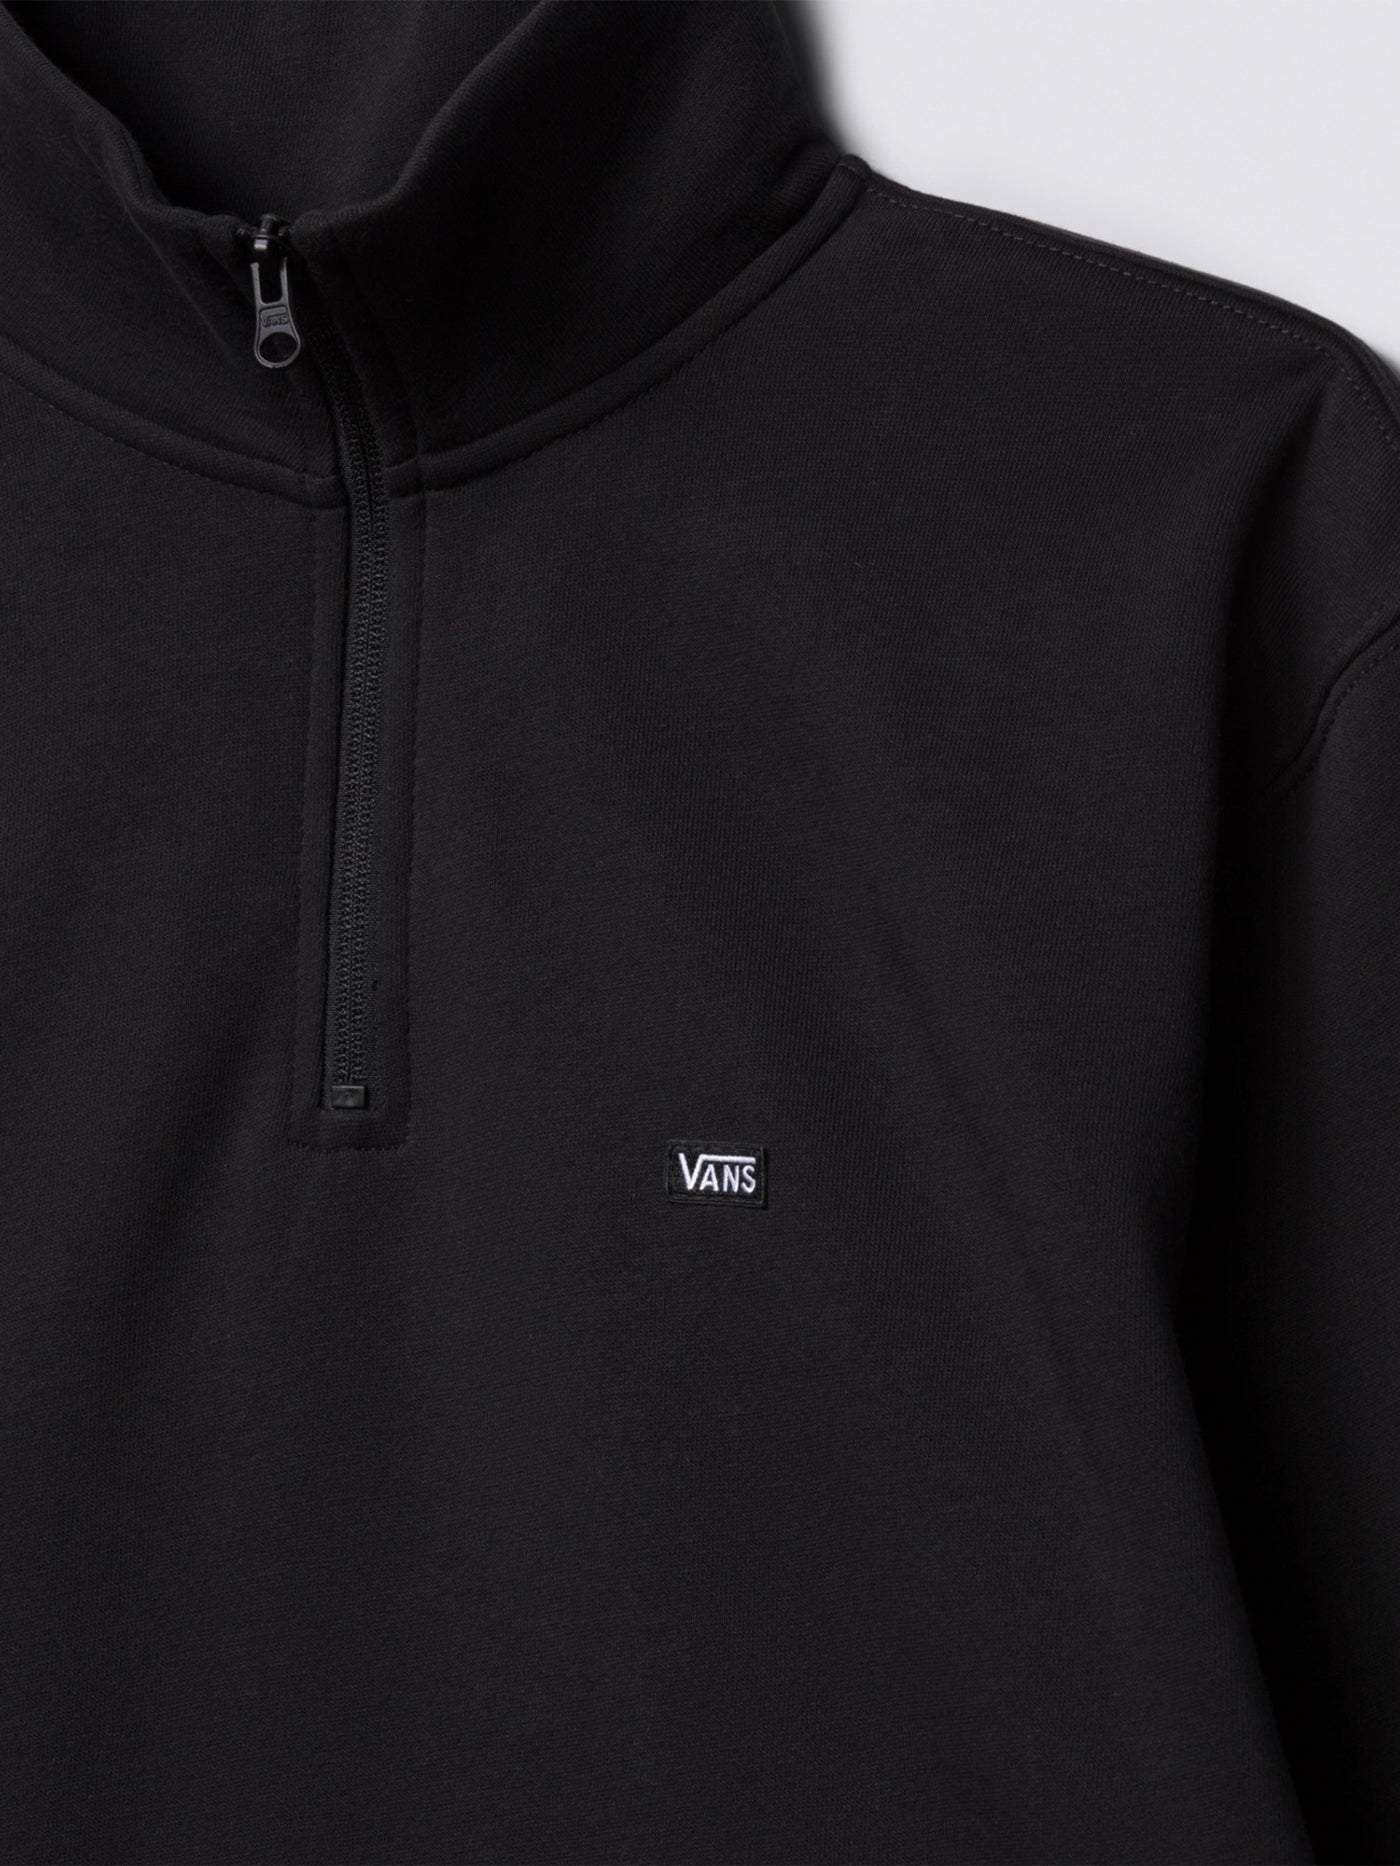 Vans Versa Standard 1/4 Zip Sweatshirt